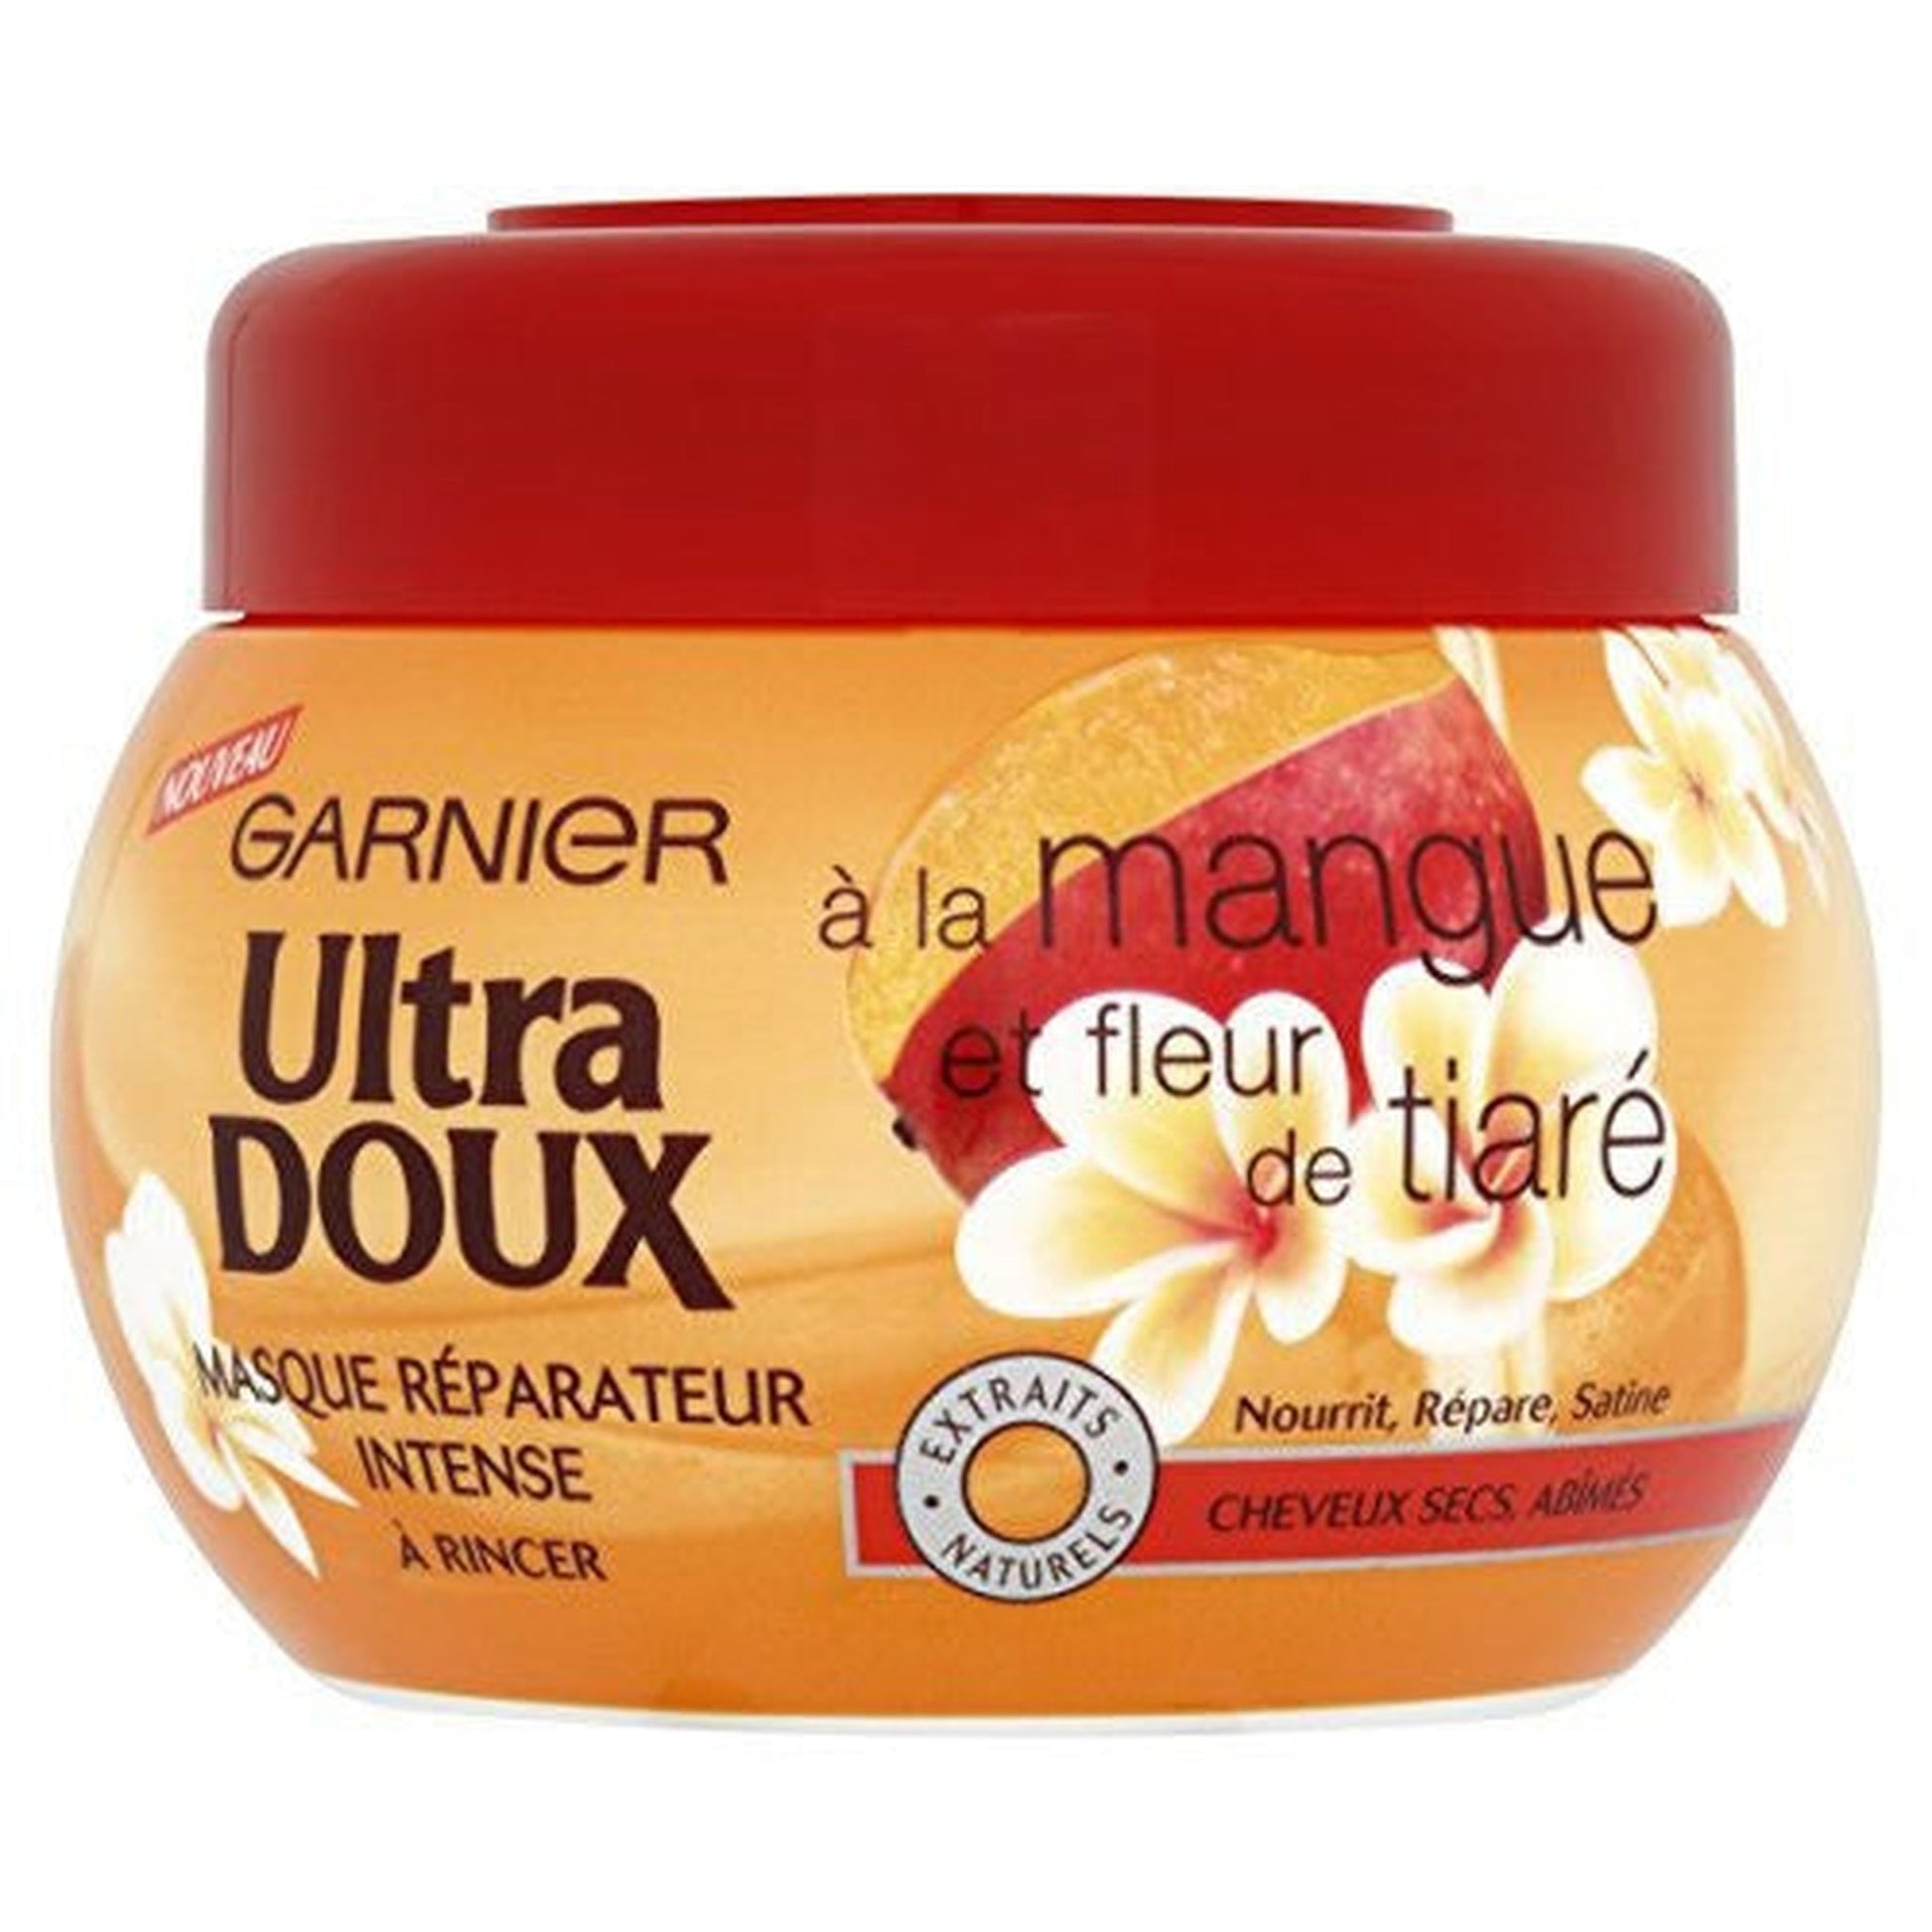 Garnier Ultra Doux Mango-Tiaré Flower - Hair Mask 300ml - Dry or Damaged Hair-Garnier-BeautyNmakeup.co.uk